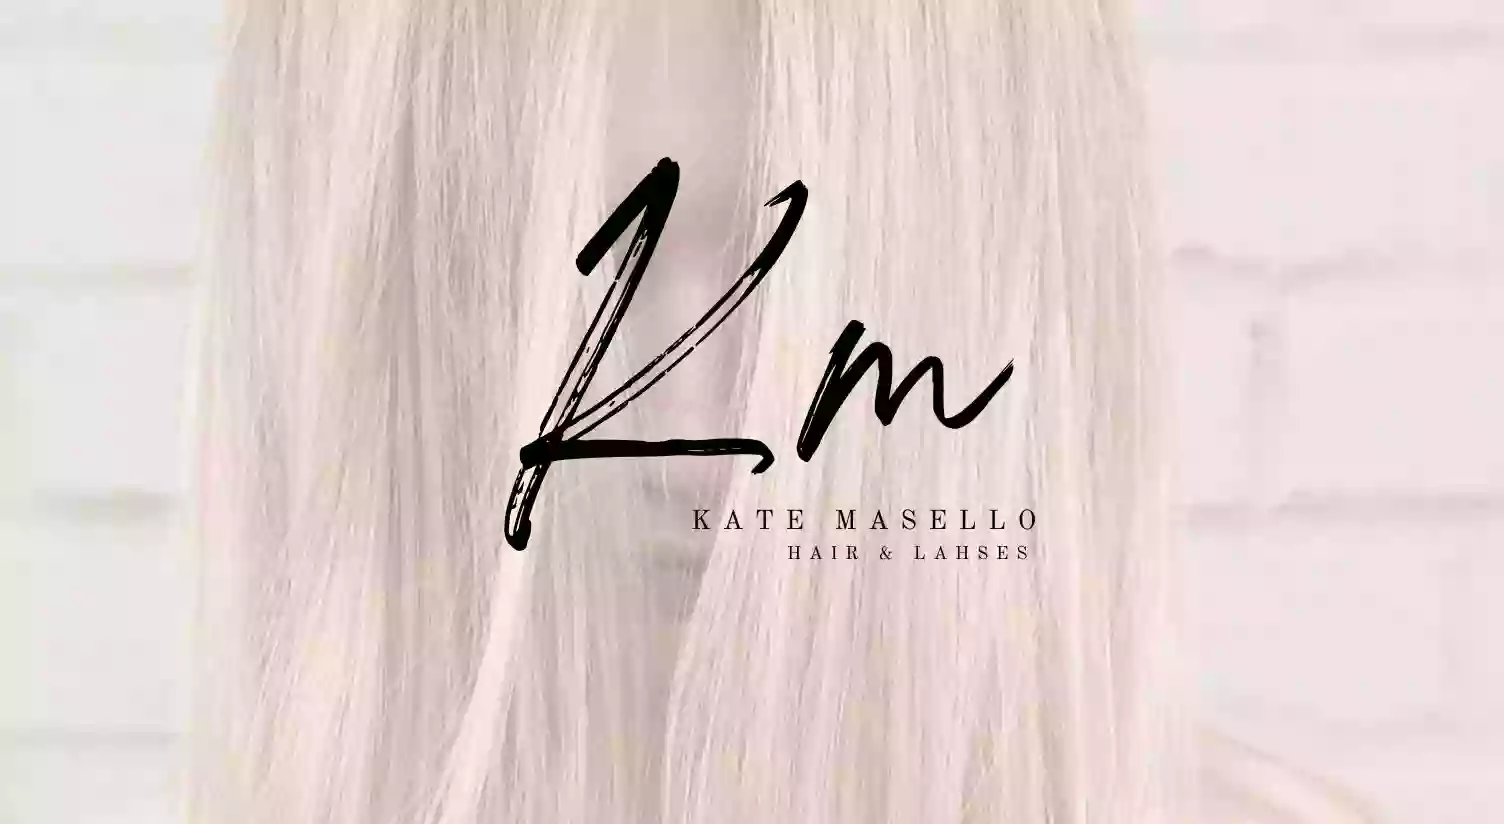 Kate Masello Hair & Lashes At HotHeads Salon